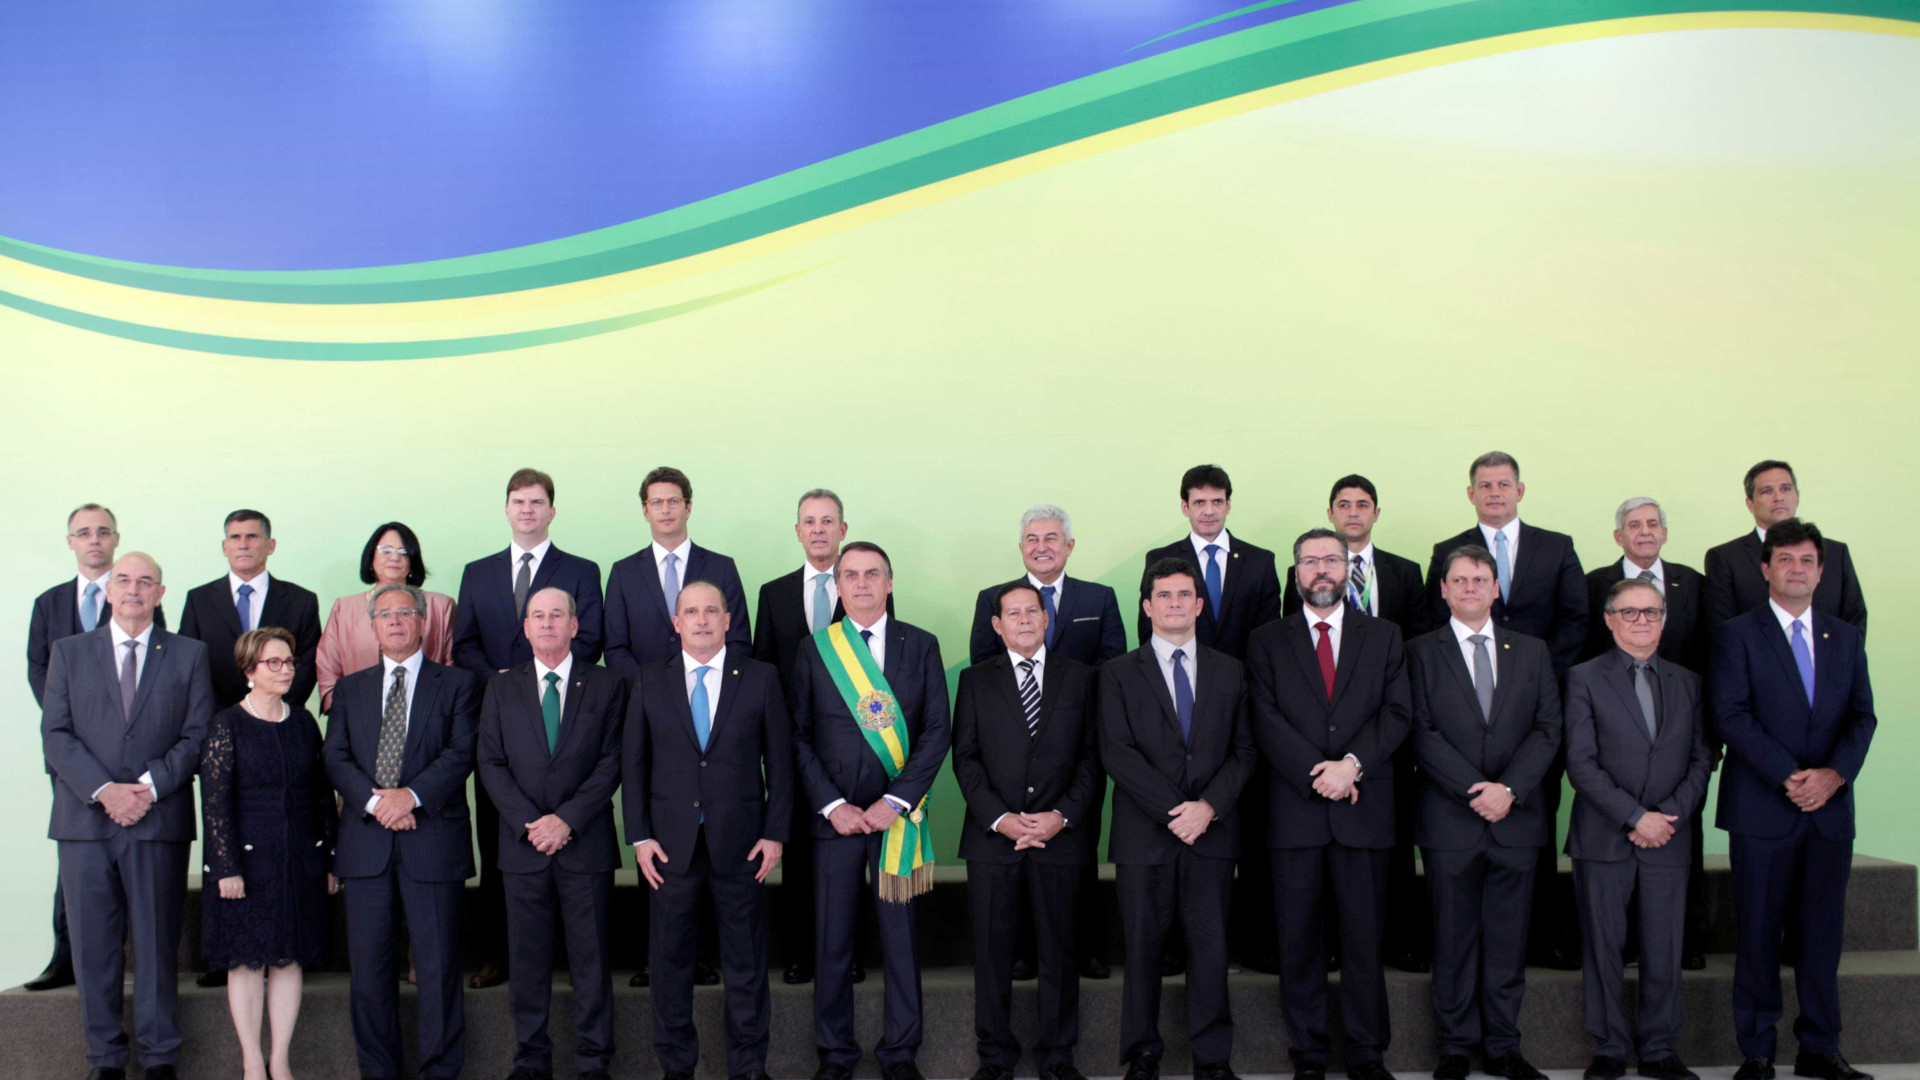 Veja quem Ã© quem no 1Âº e no 2Âº escalÃ£o do governo Bolsonaro